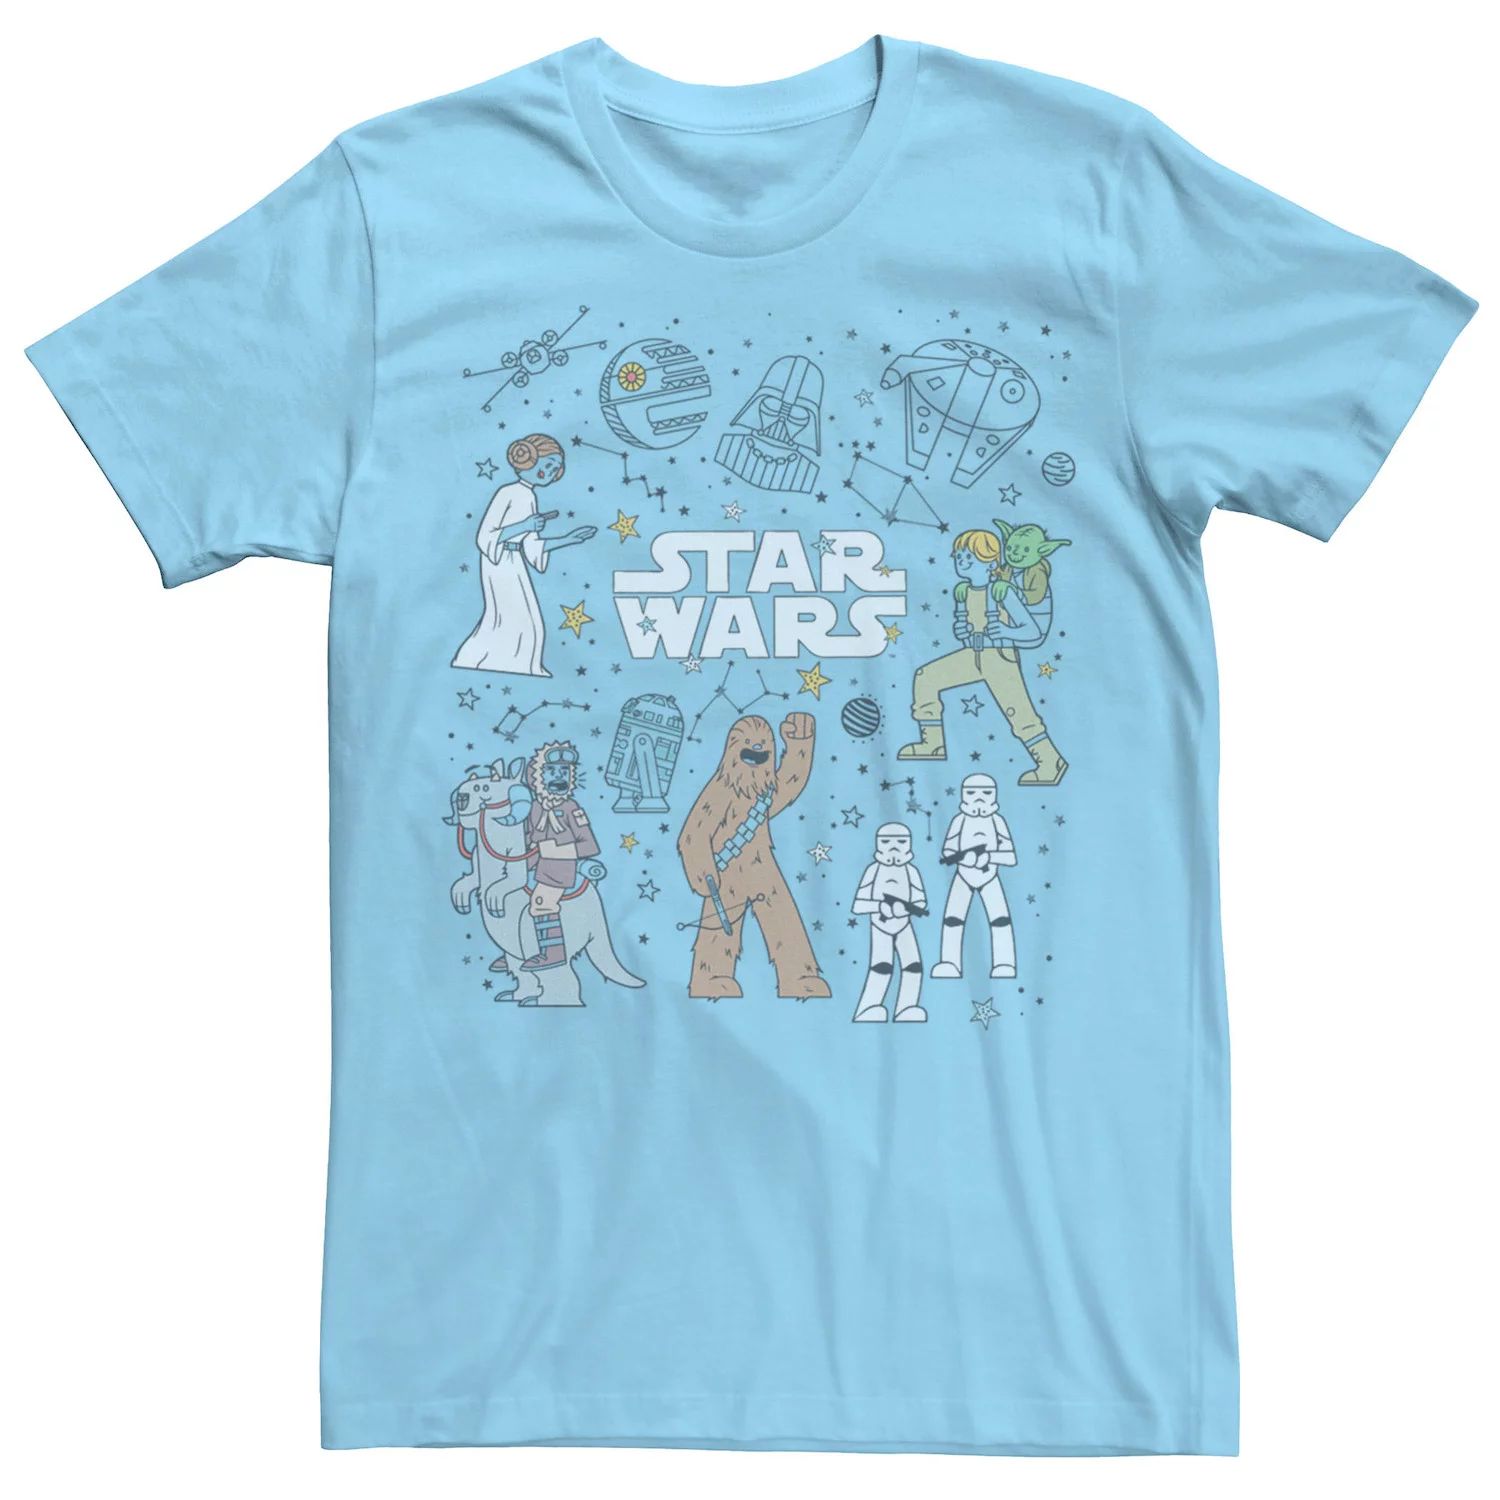 Мужская футболка с рисунками «Звездные войны» и «Созвездие» Star Wars, светло-синий sandokey galaxy star light